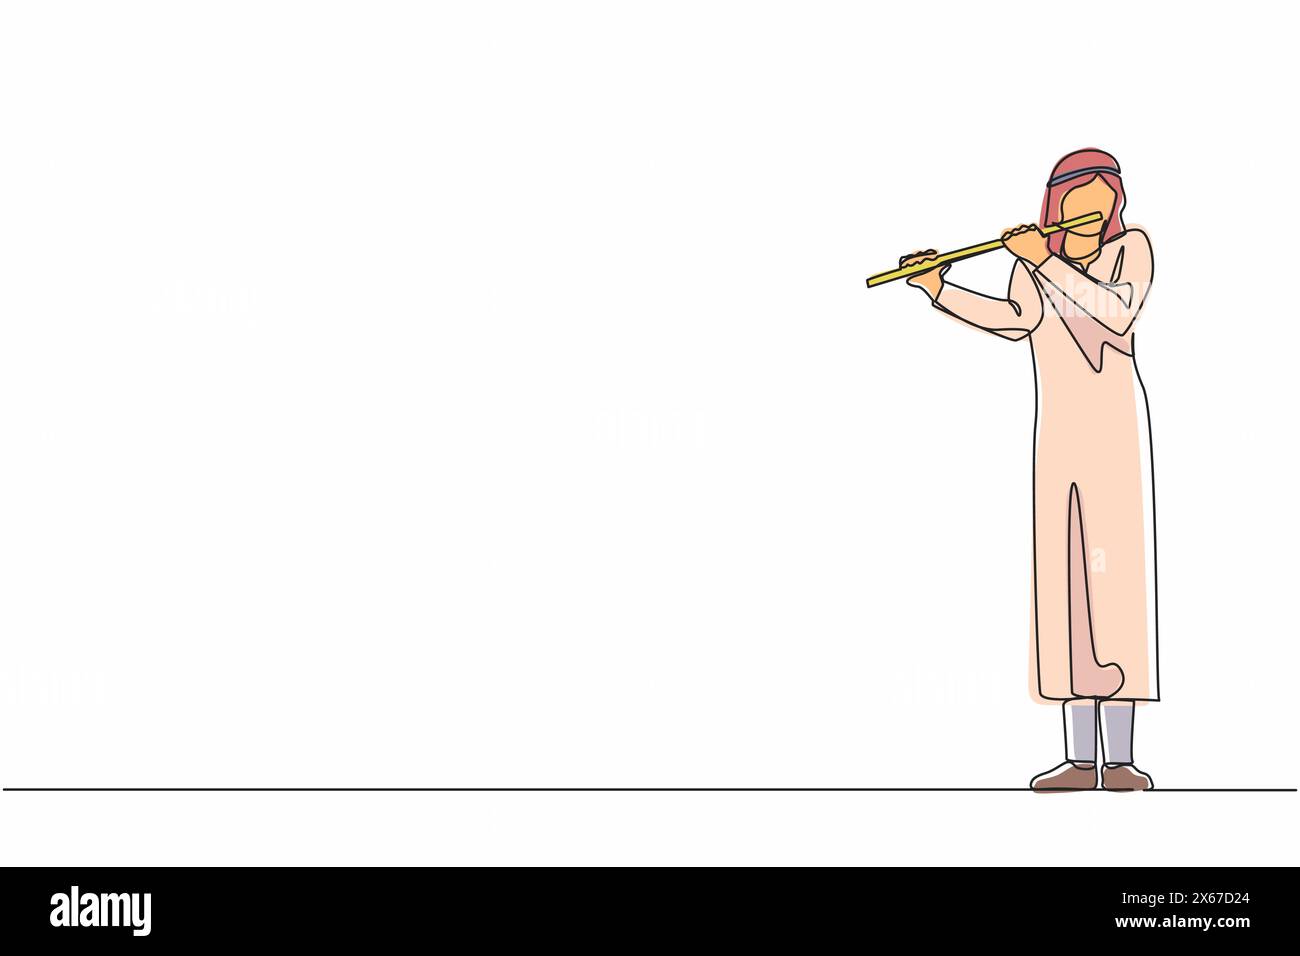 Linea singola continua che disegna un musicista arabo che suona il flauto, in piedi sul palco. Flautista che esegue musica classica su strumenti a fiato. Solo perfor Illustrazione Vettoriale